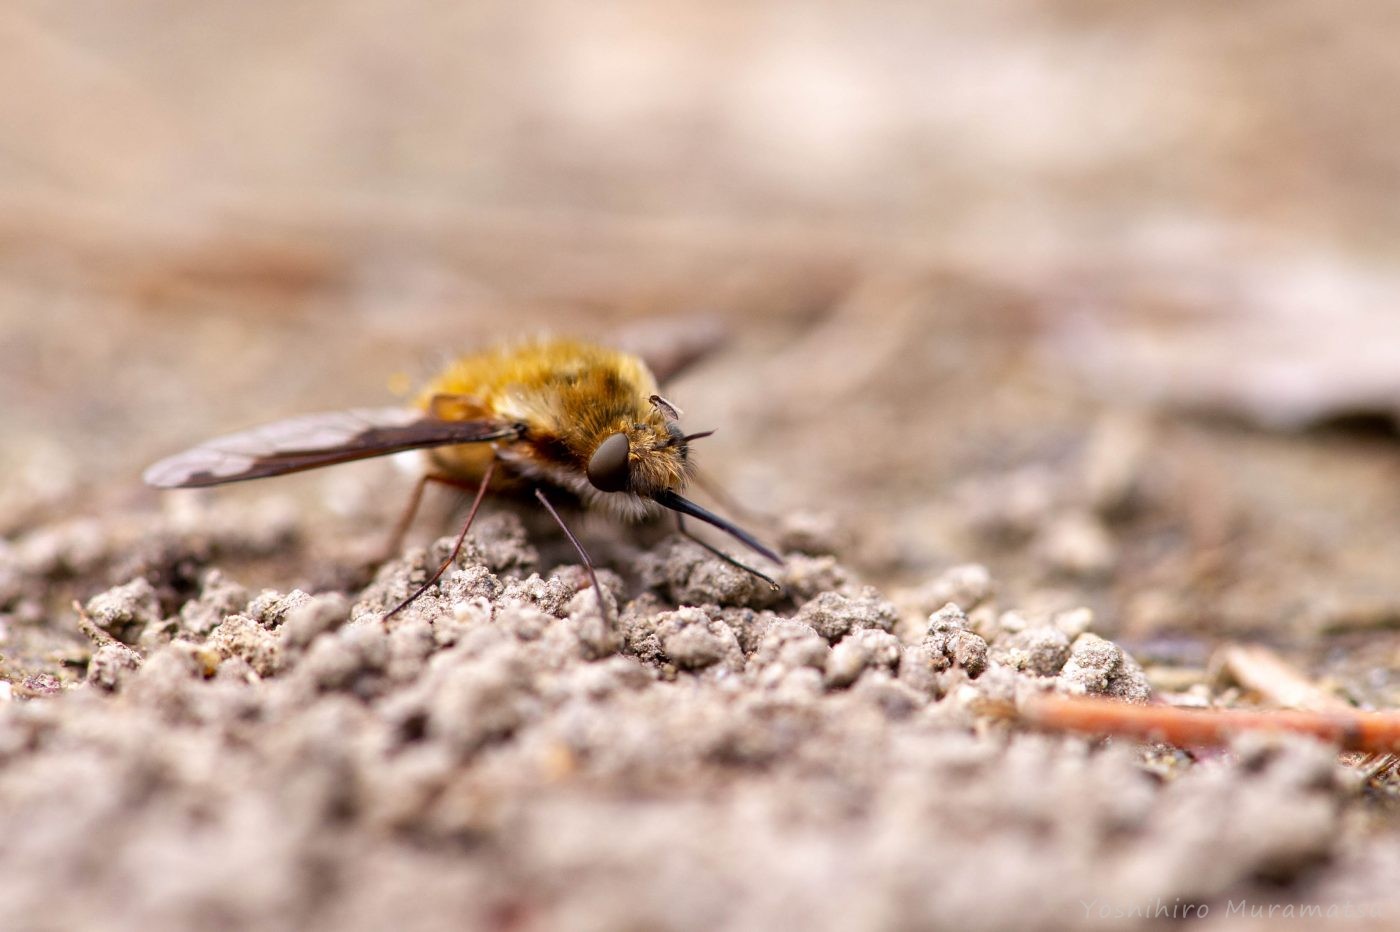 ビロウドツリアブ ビロードツリアブ 虫の写真と生態なら昆虫写真図鑑 ムシミル